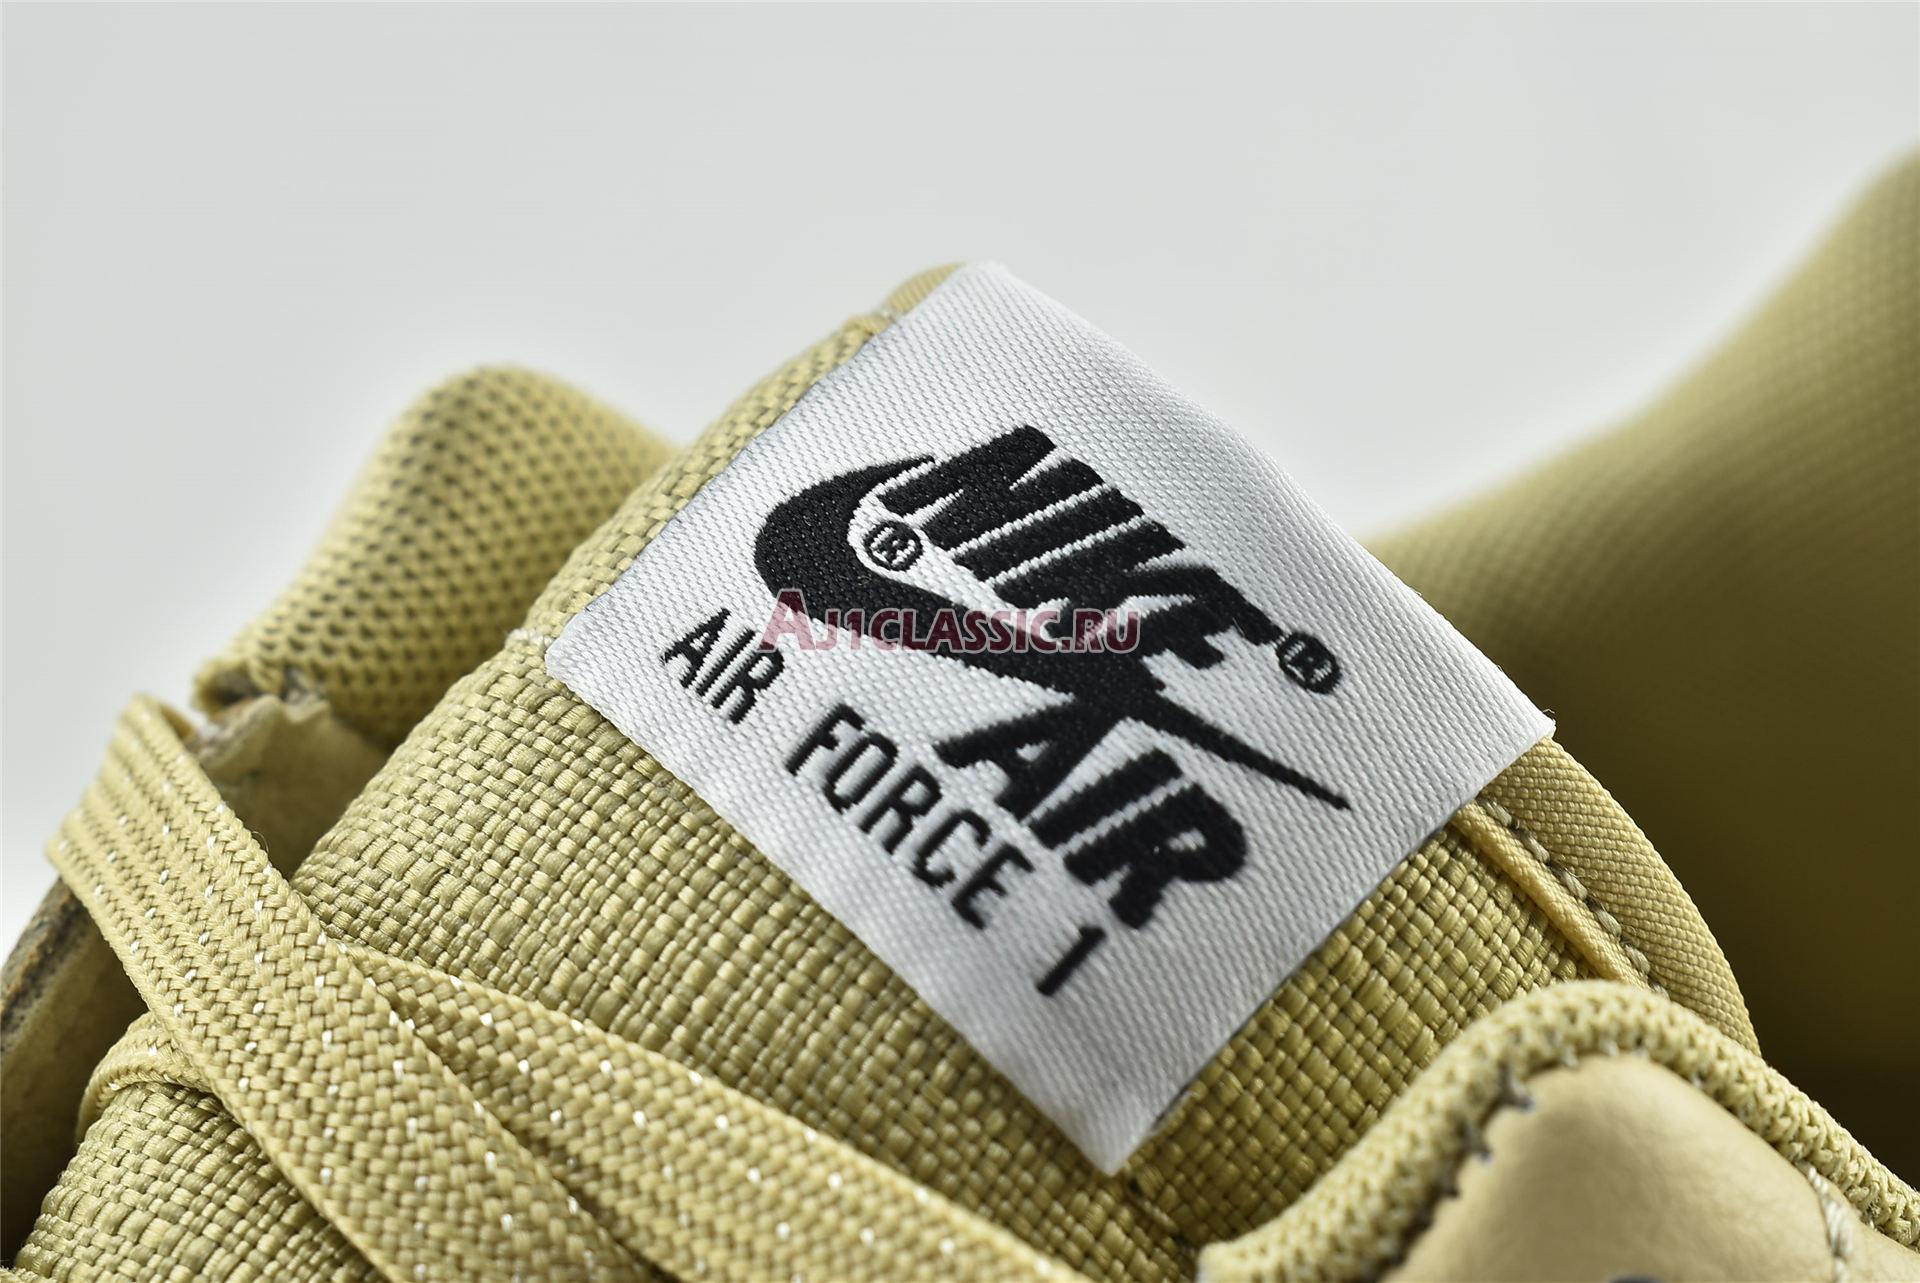 Nike Air Force 1 Low LV8 Gore-Tex BG "Gold" CQ4215-700